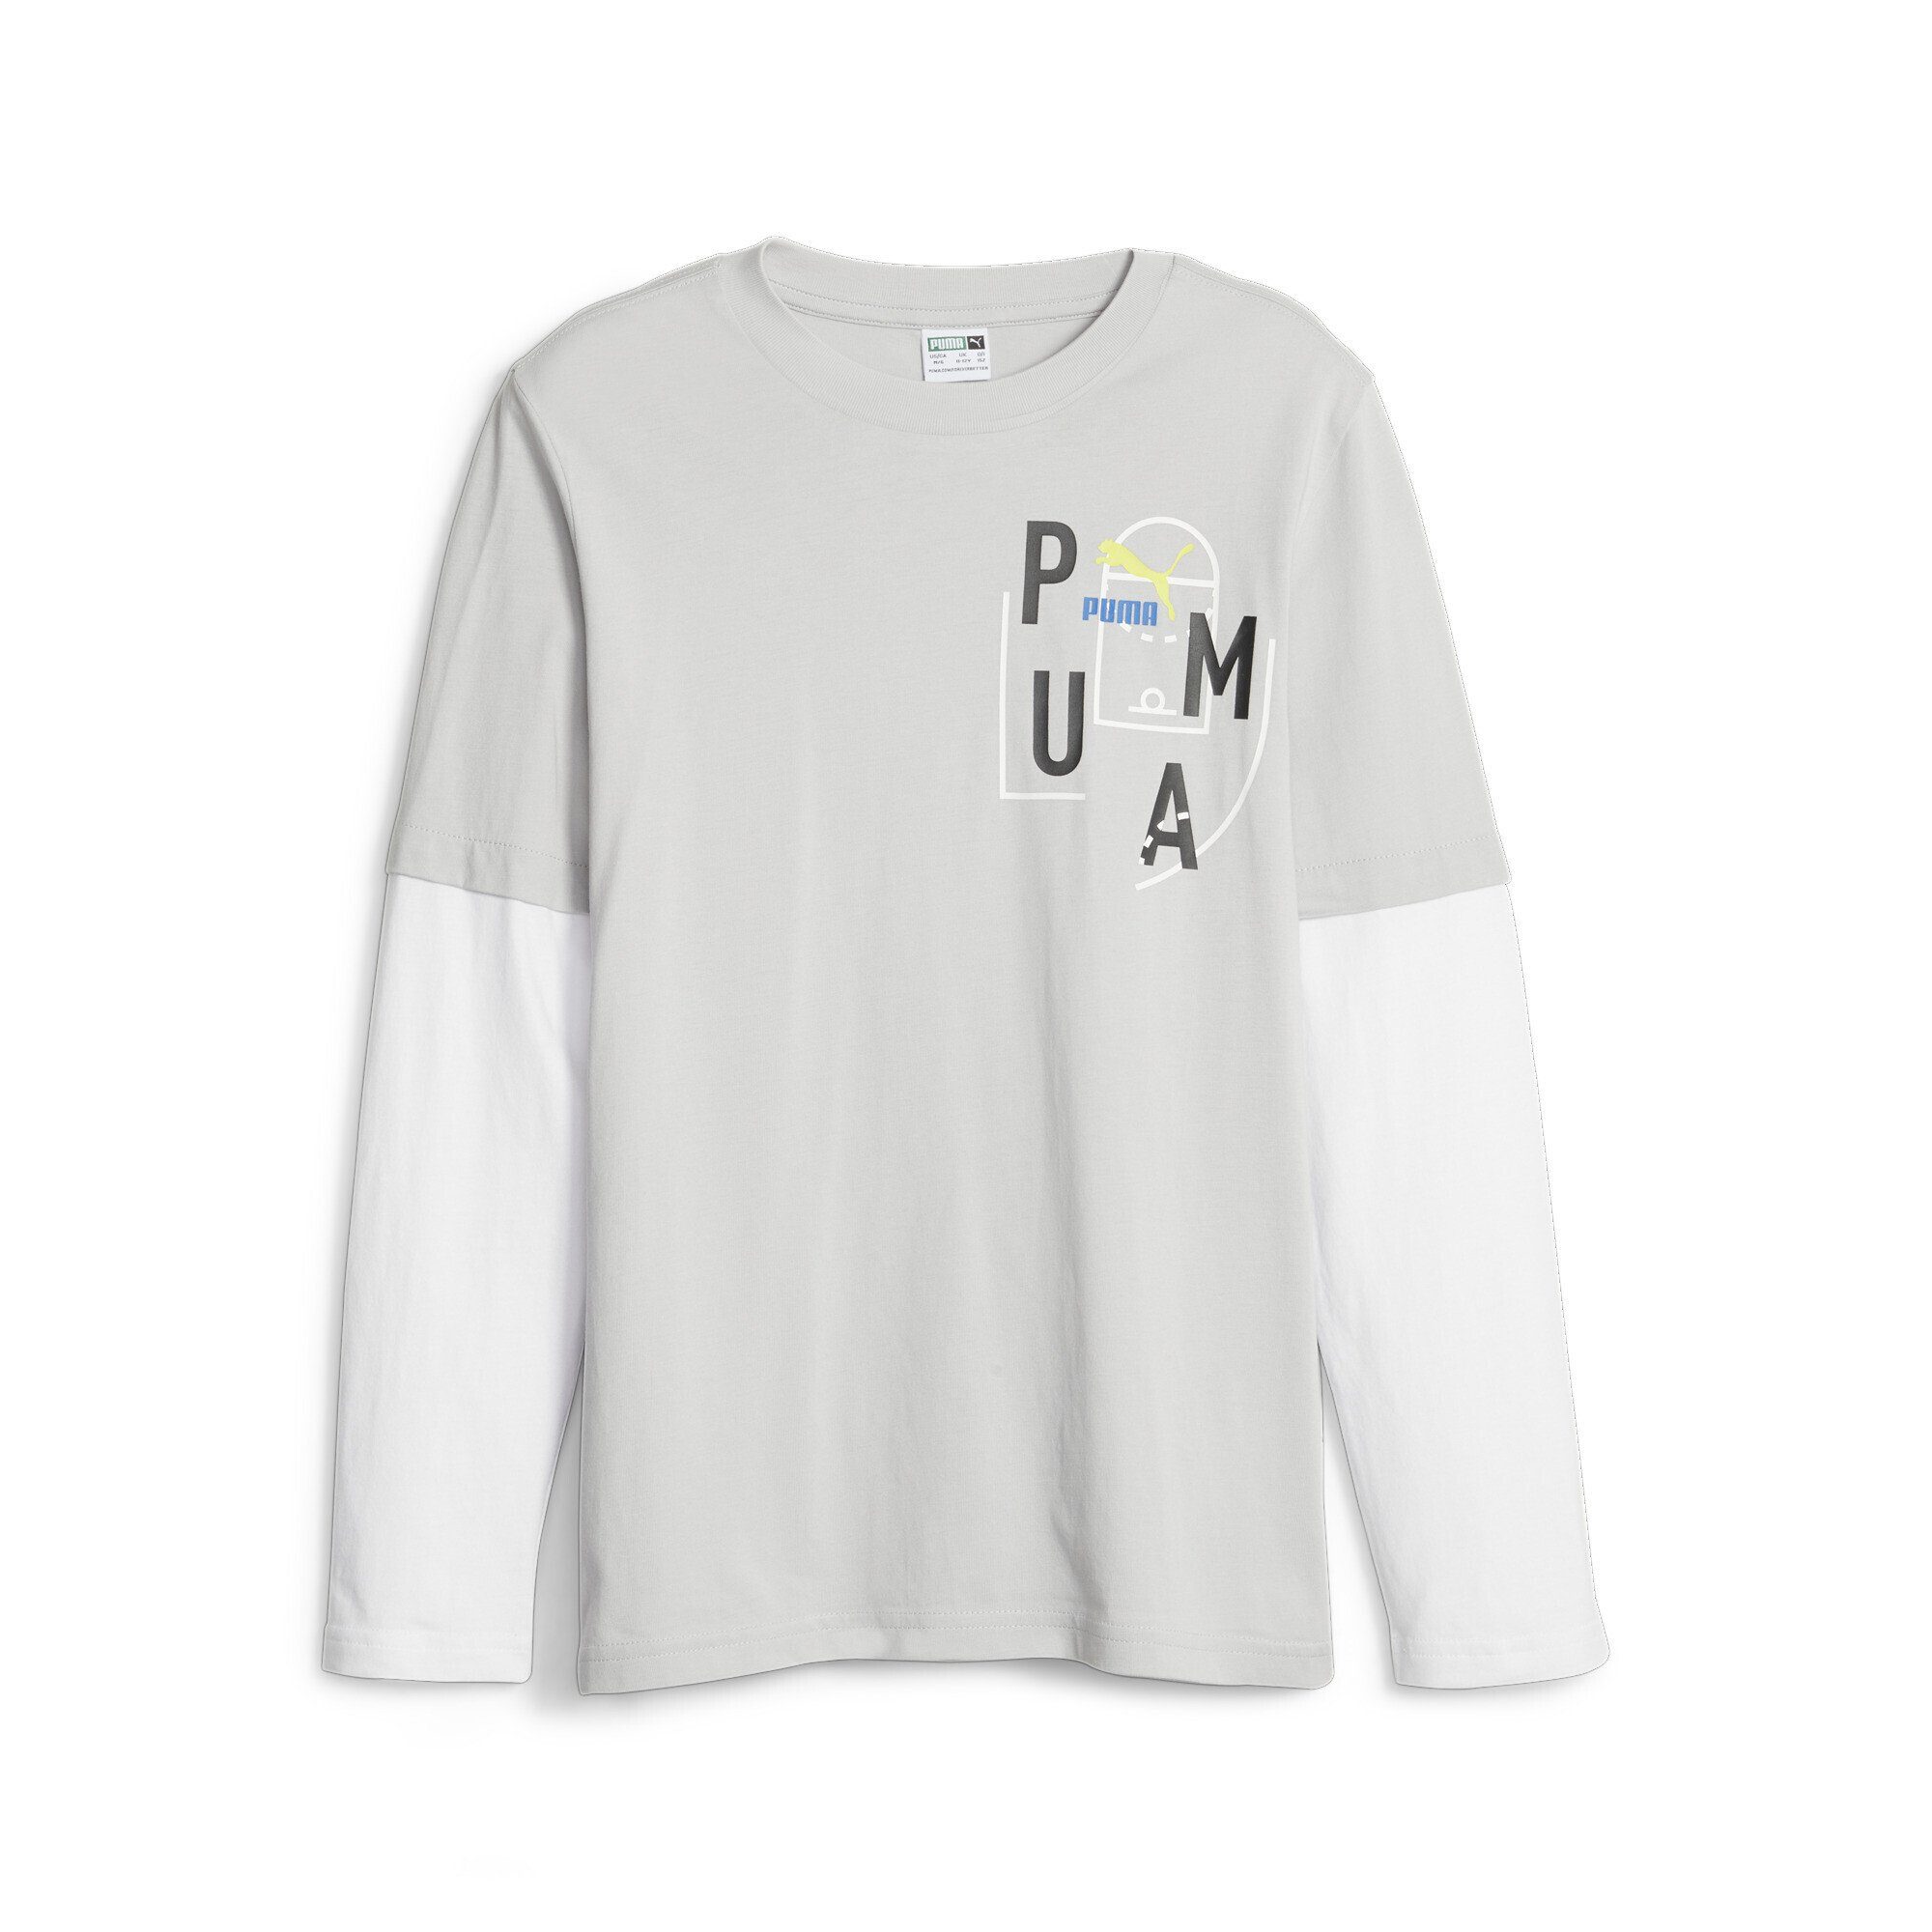 Classics Jugendliche T-Shirt Gray Langarmshirt FTR Ash PUMA Baller